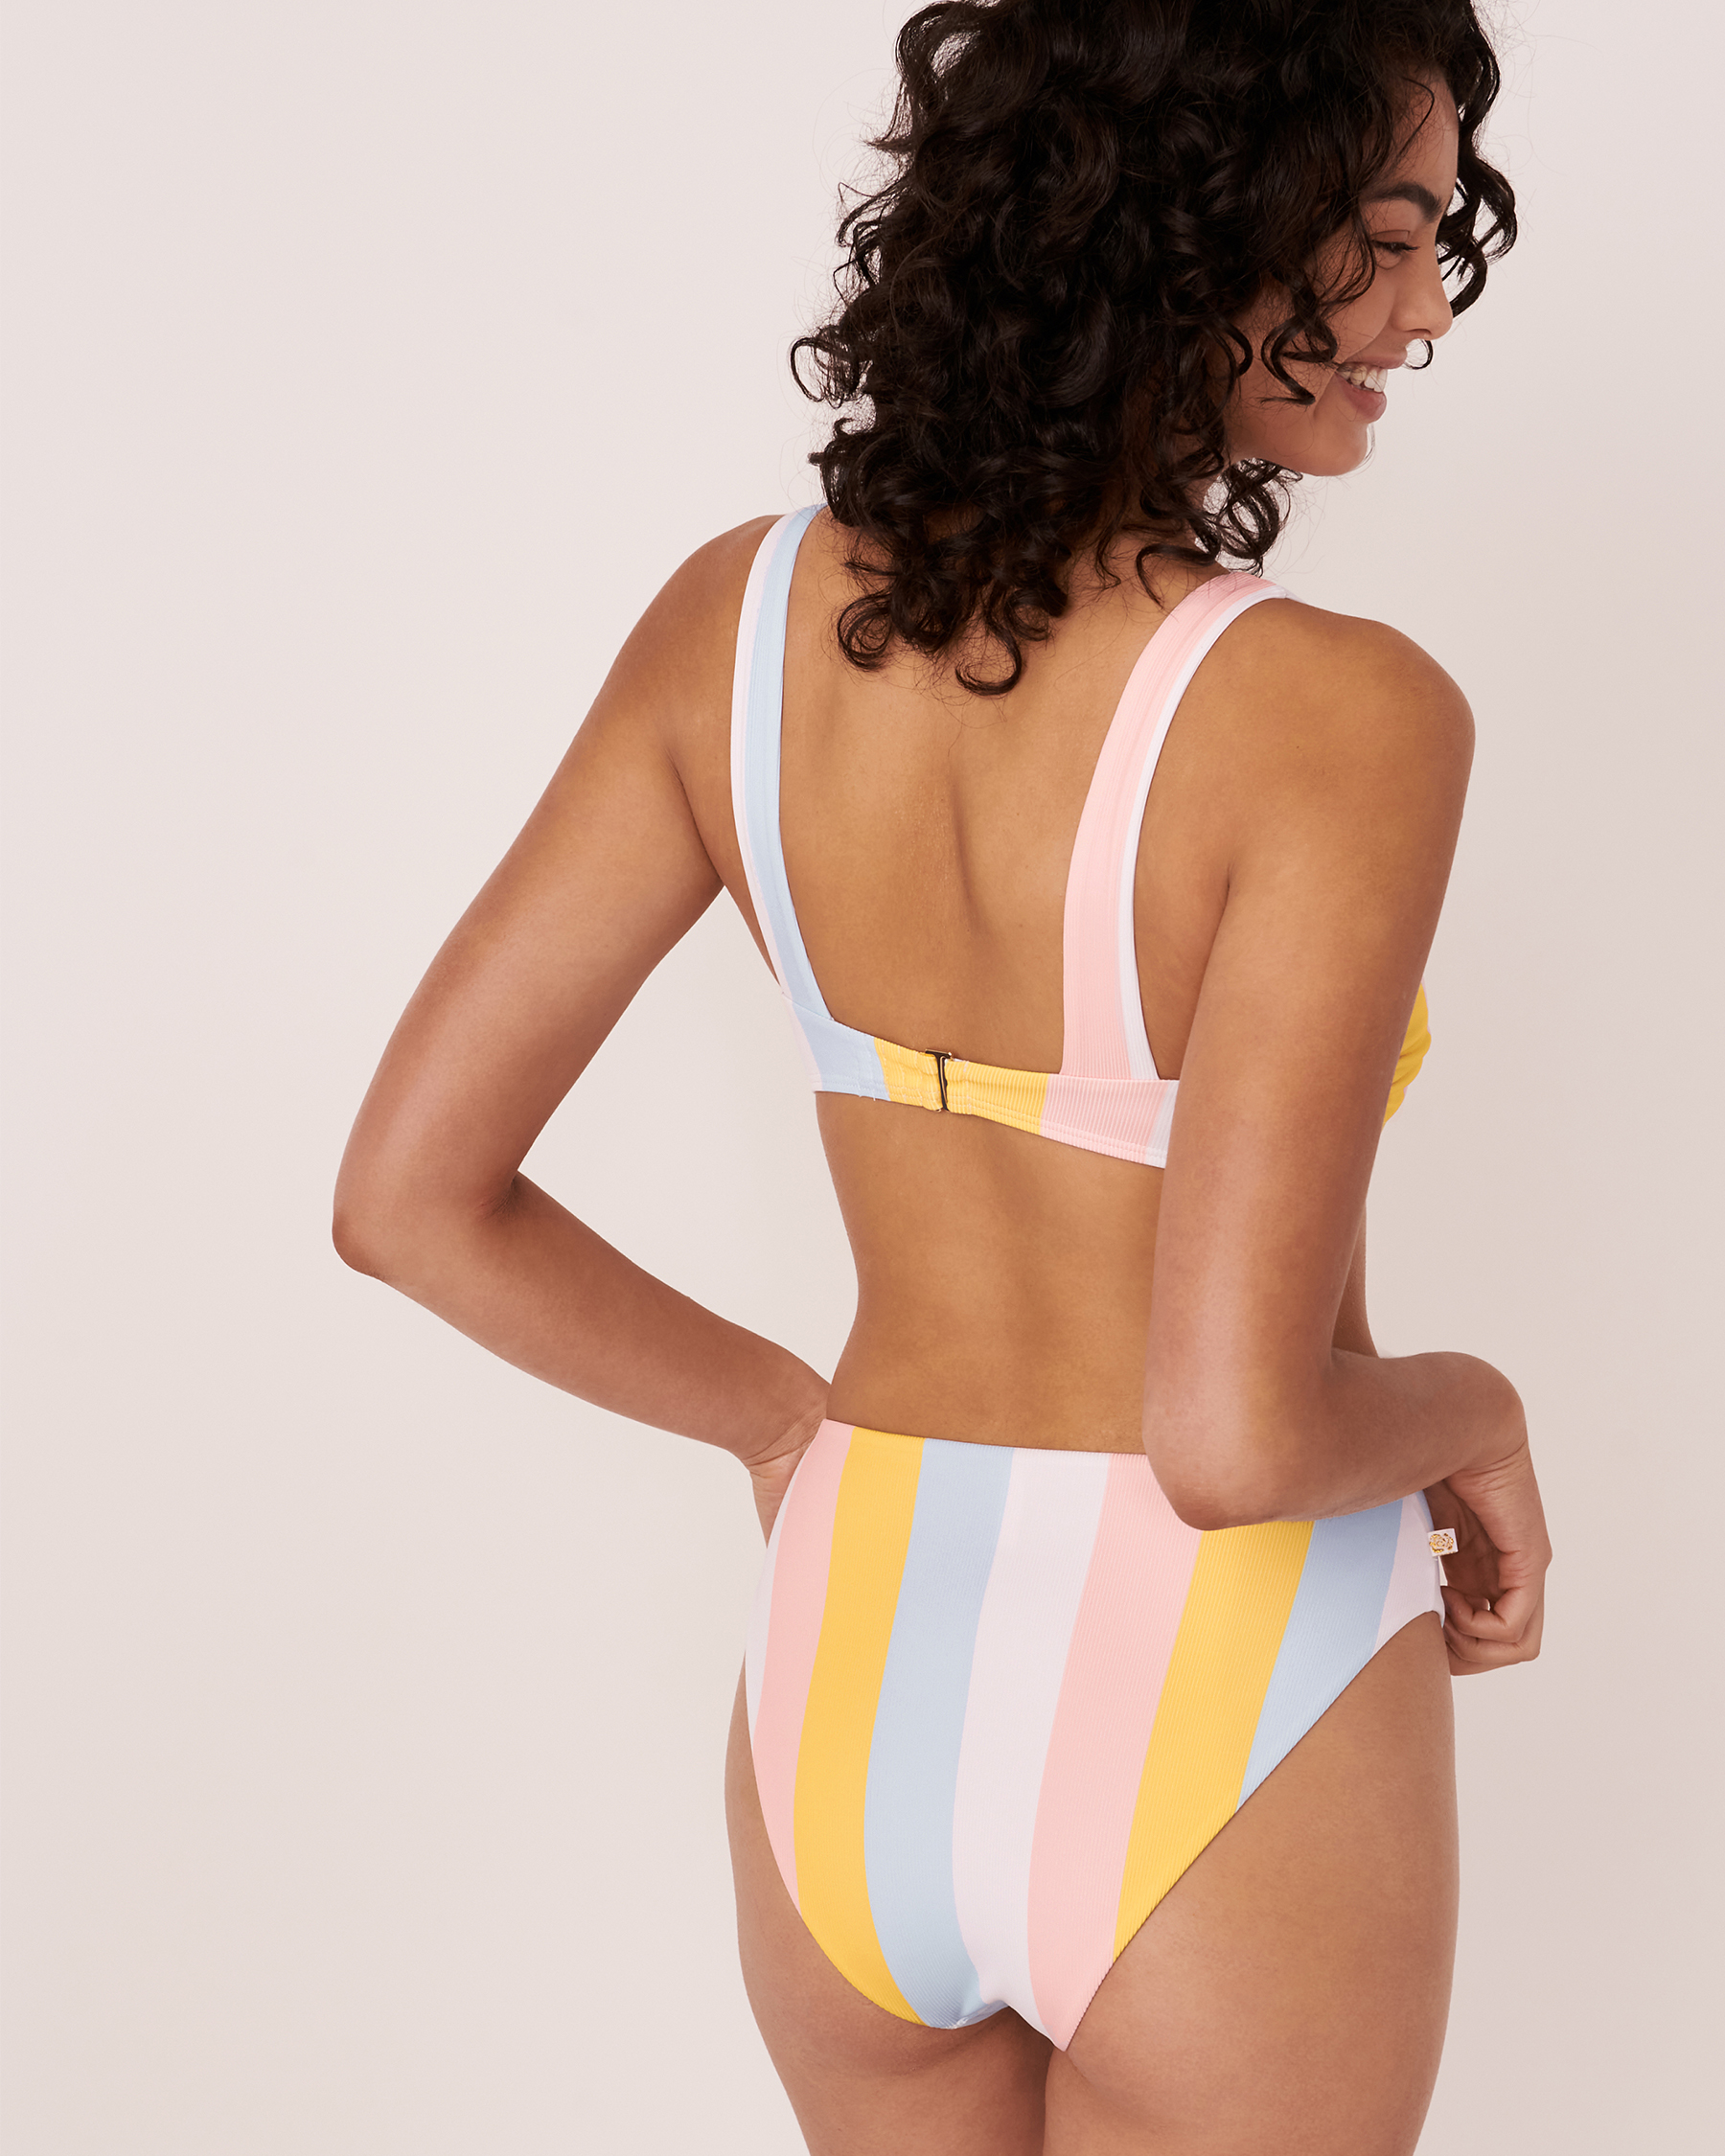 LA VIE EN ROSE AQUA BREEZY Recycled Fibers Bralette Bikini Top Pastel stripes 70100123 - View2